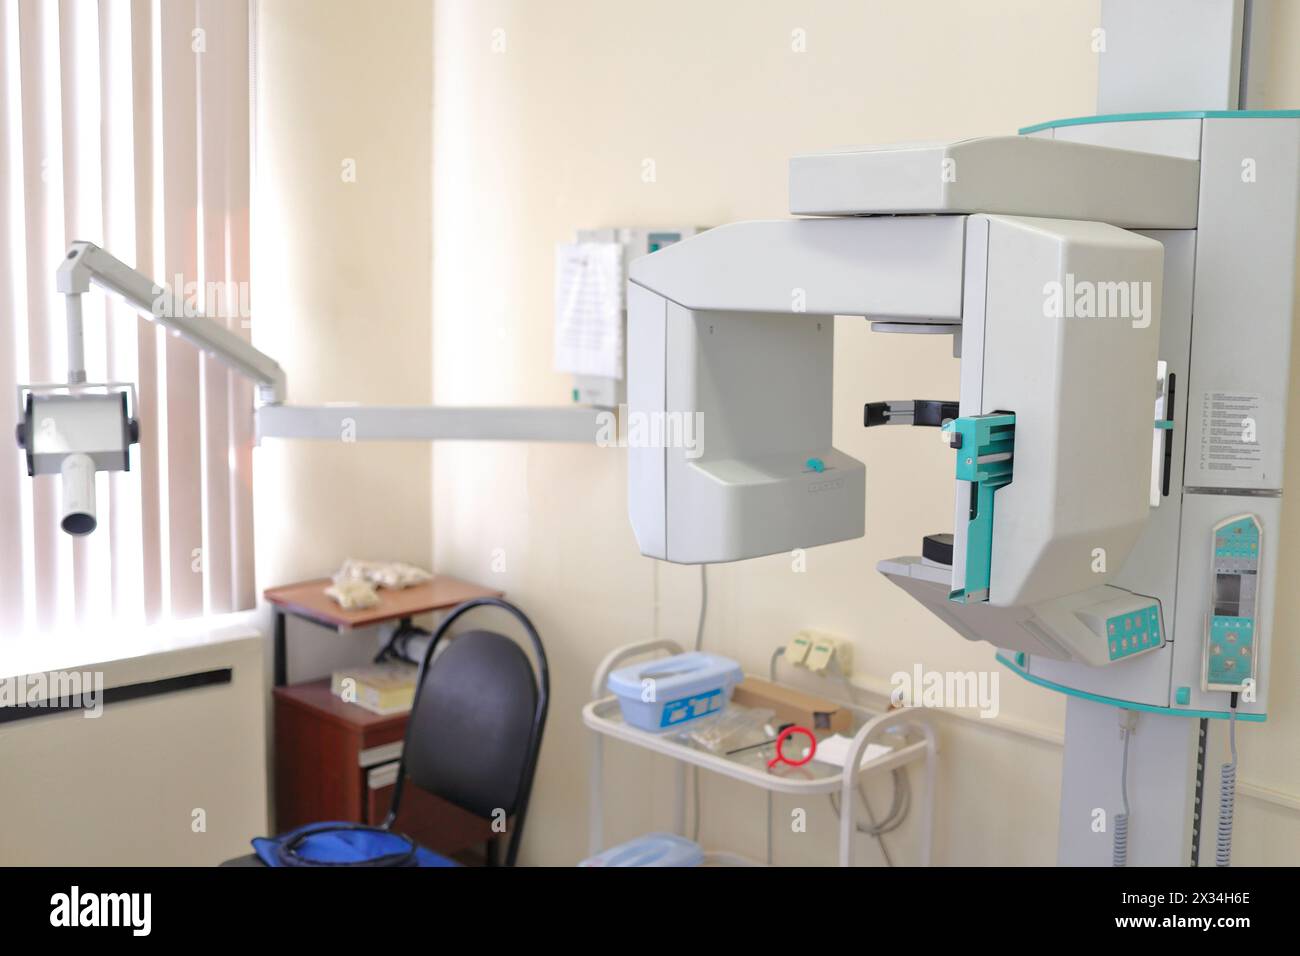 Orthopantomographe, appareil de radiographie panoramique dentaire pour produire des images en un seul coup du système dentaire entier Banque D'Images